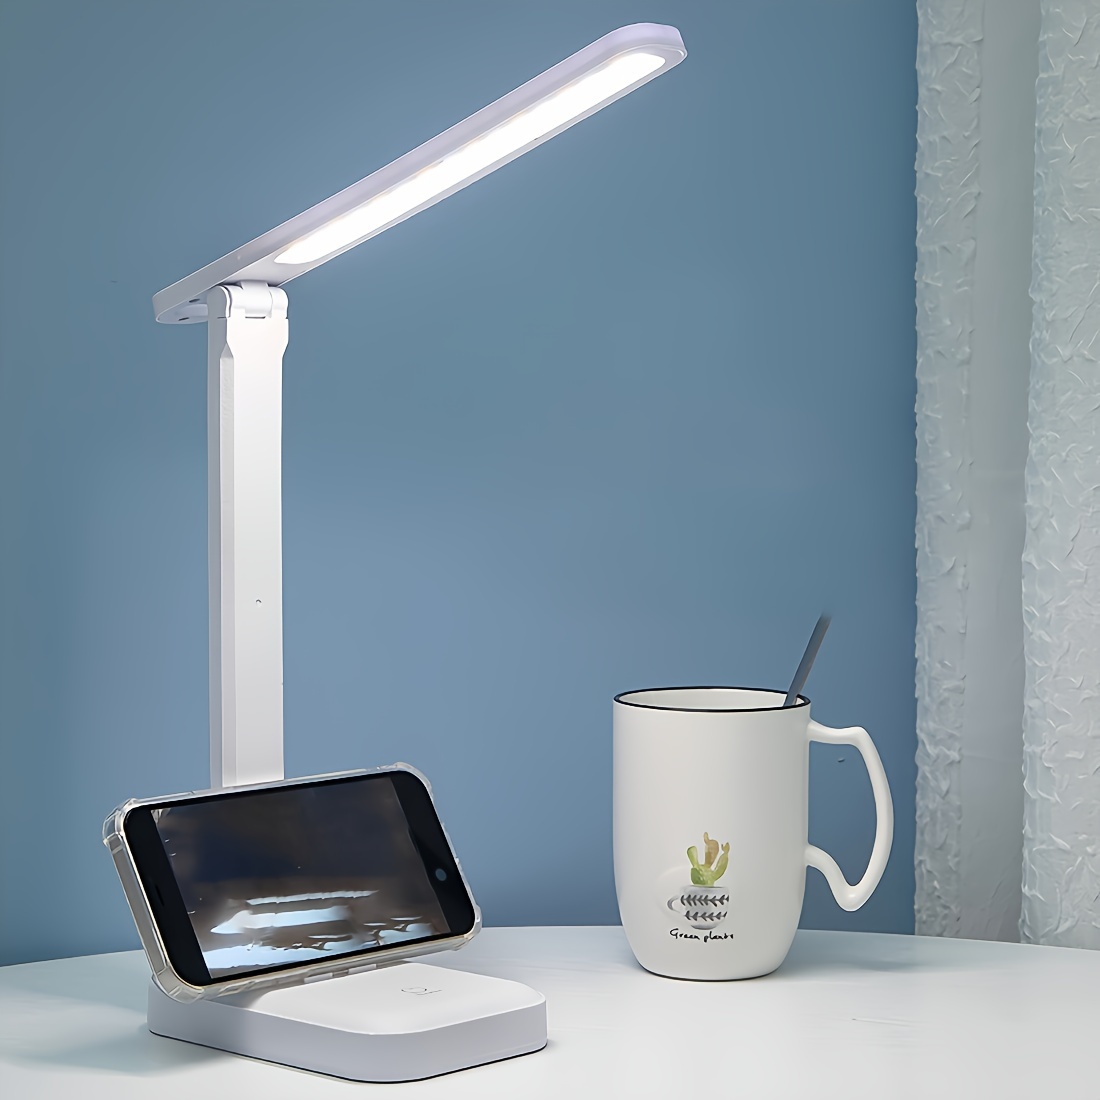 

Nouvelle Lampe De Bureau Pliante À LED Tactile D'apprentissage De Lecture De Chevet Avec Prise De Charge USB